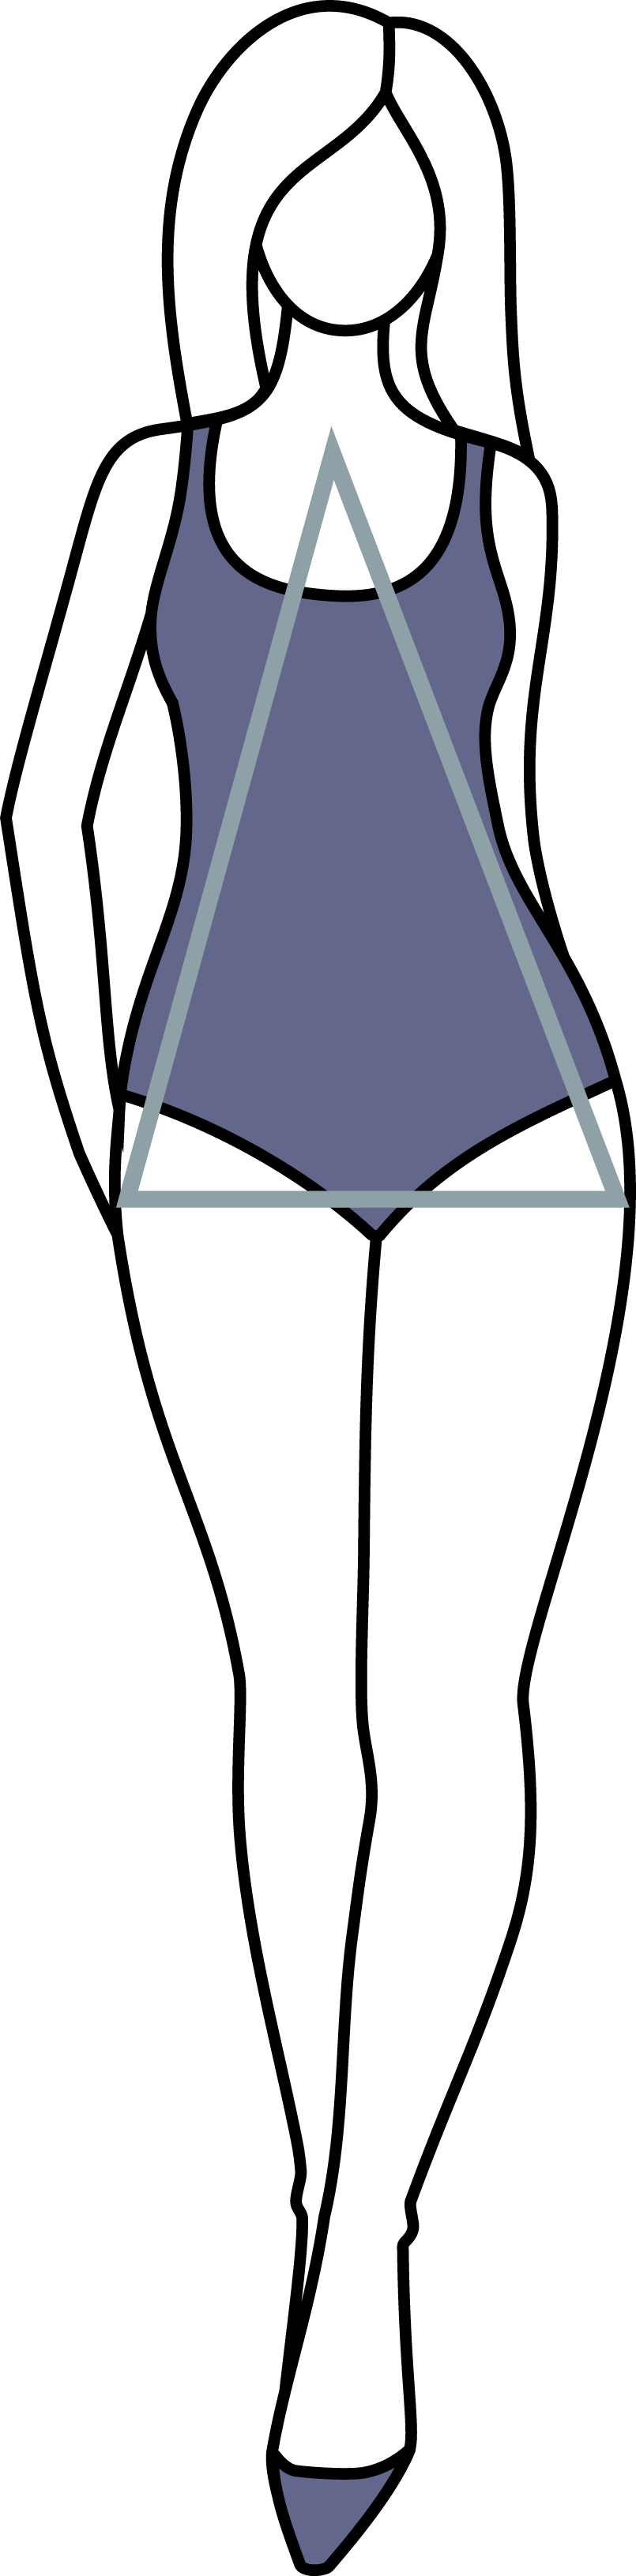 Teardrop Body Type